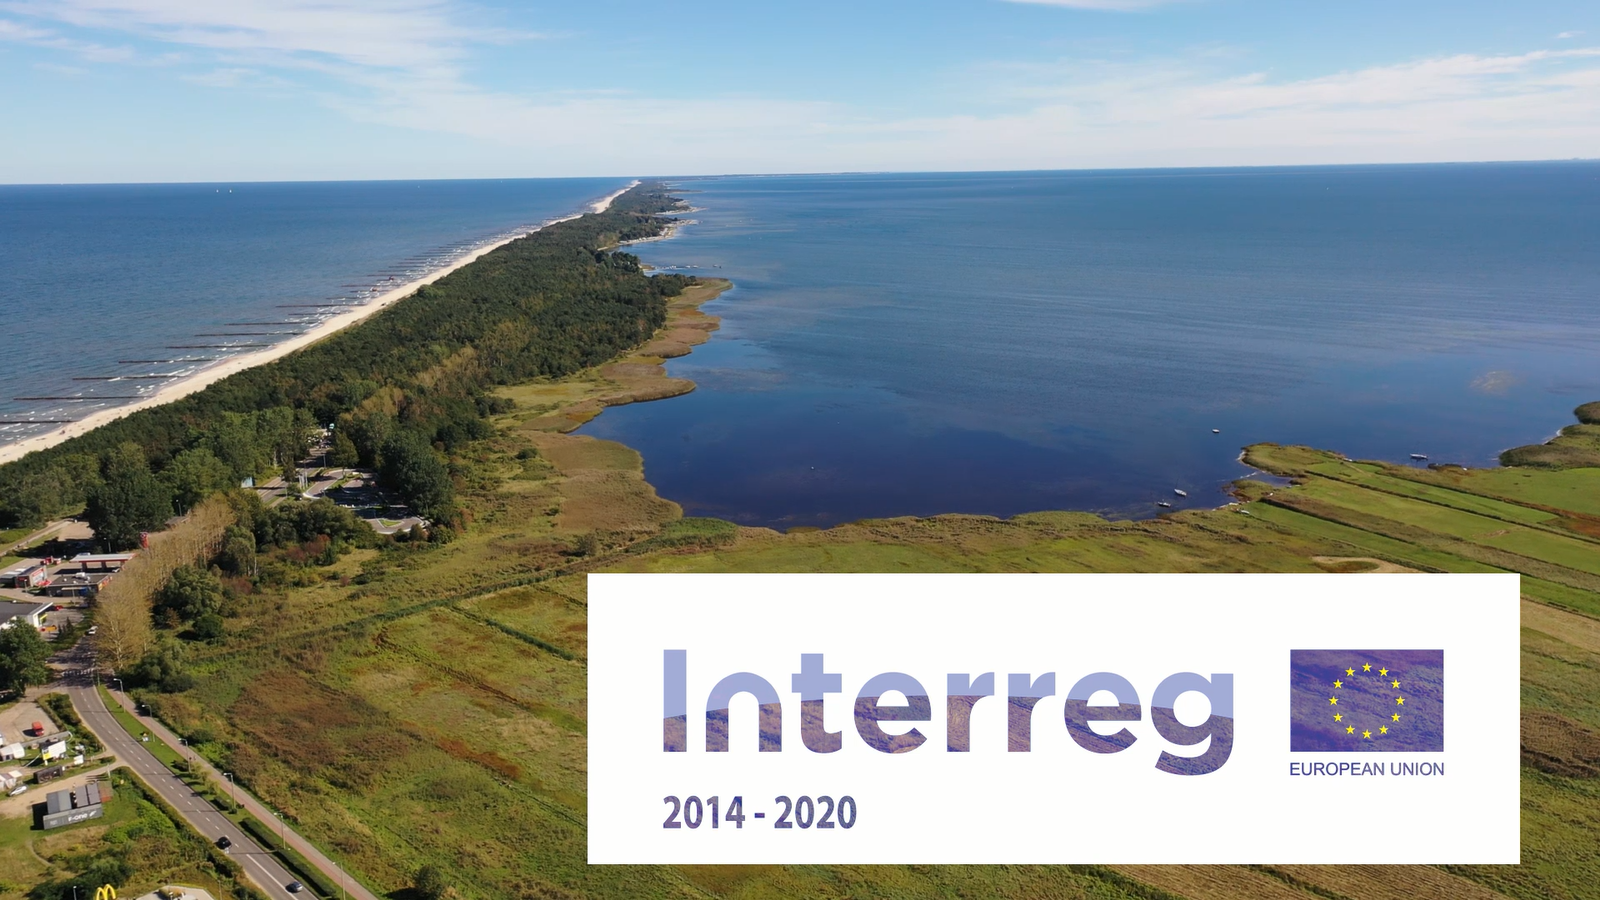 Obejrzyj film promocyjny o projektach z województwa pomorskiego – Interreg 2014-2020